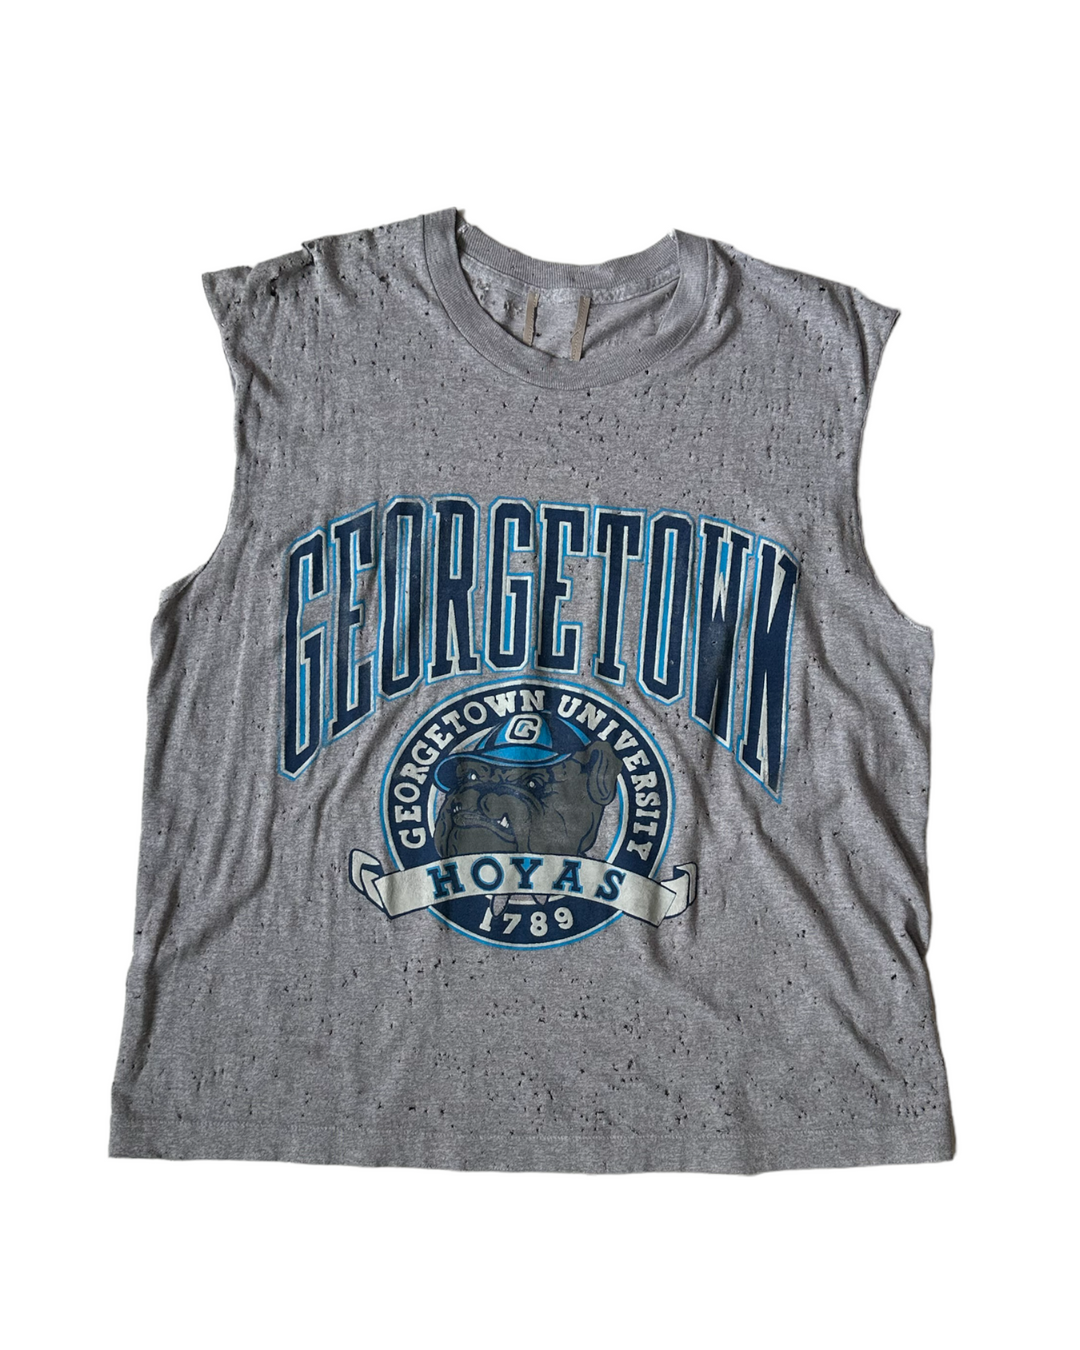 Georgetown Vintage Distressed Shirt